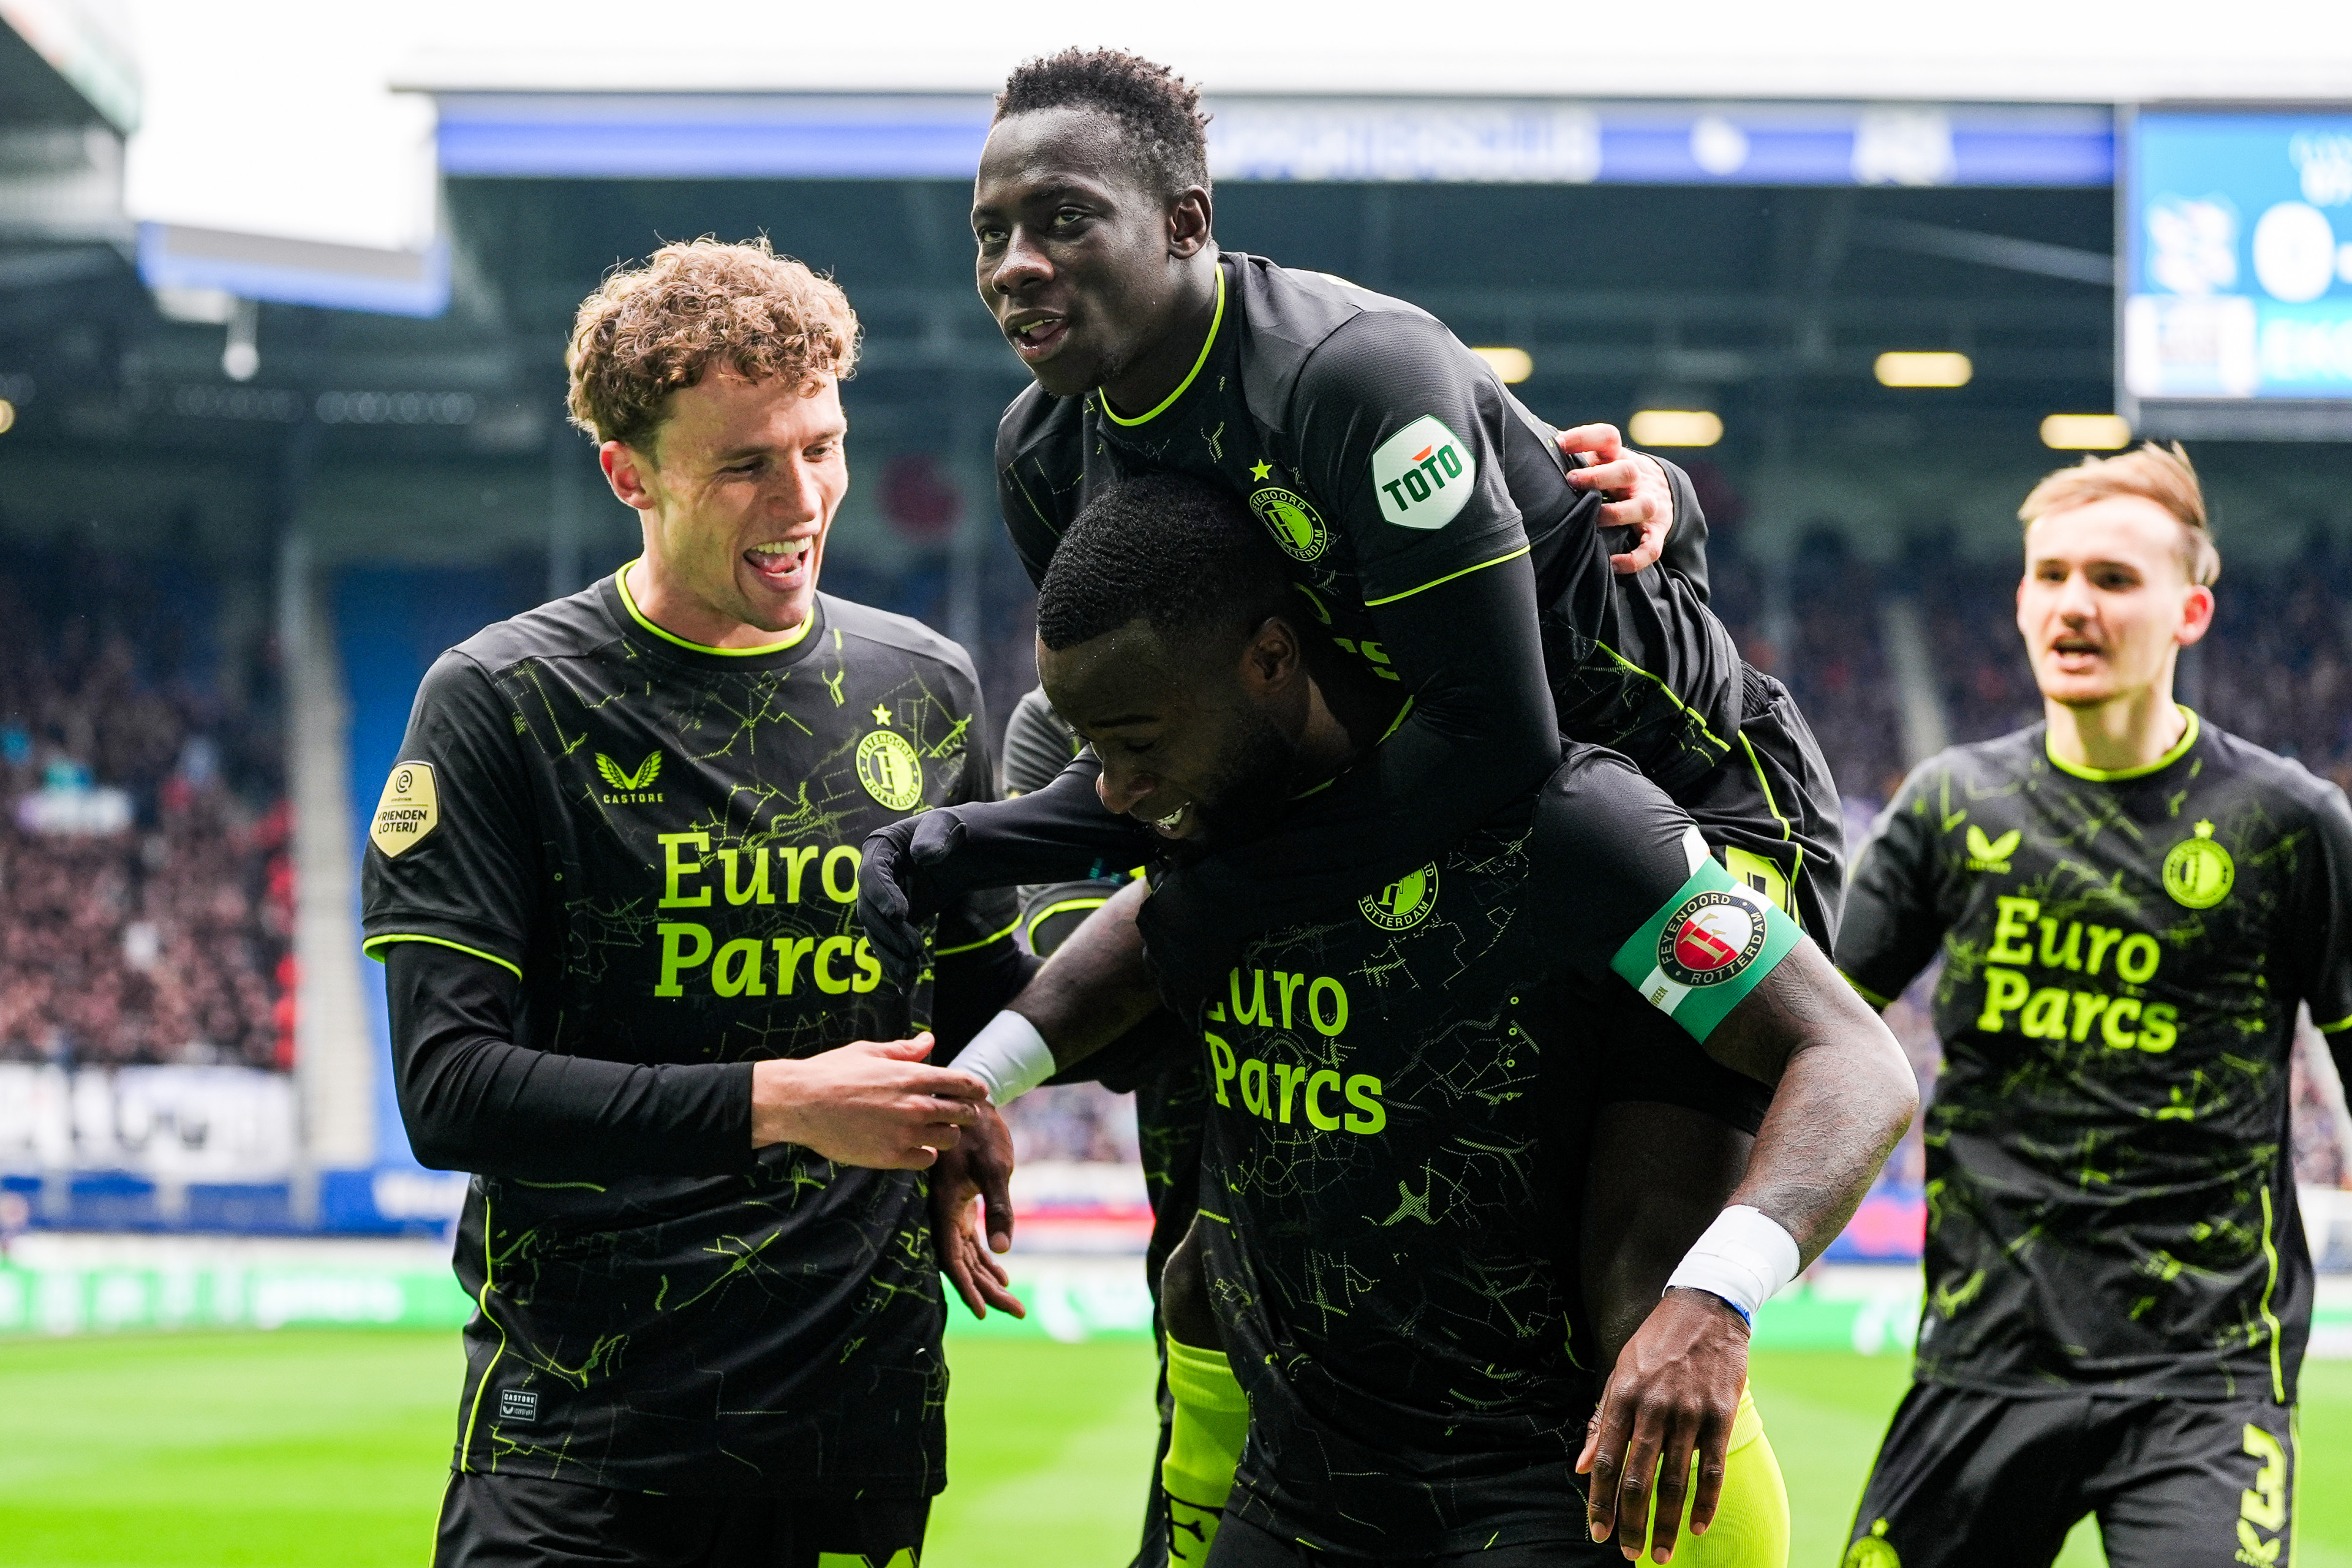 Liveblog • SC Heerenveen - Feyenoord • 2 - 3 [FT]